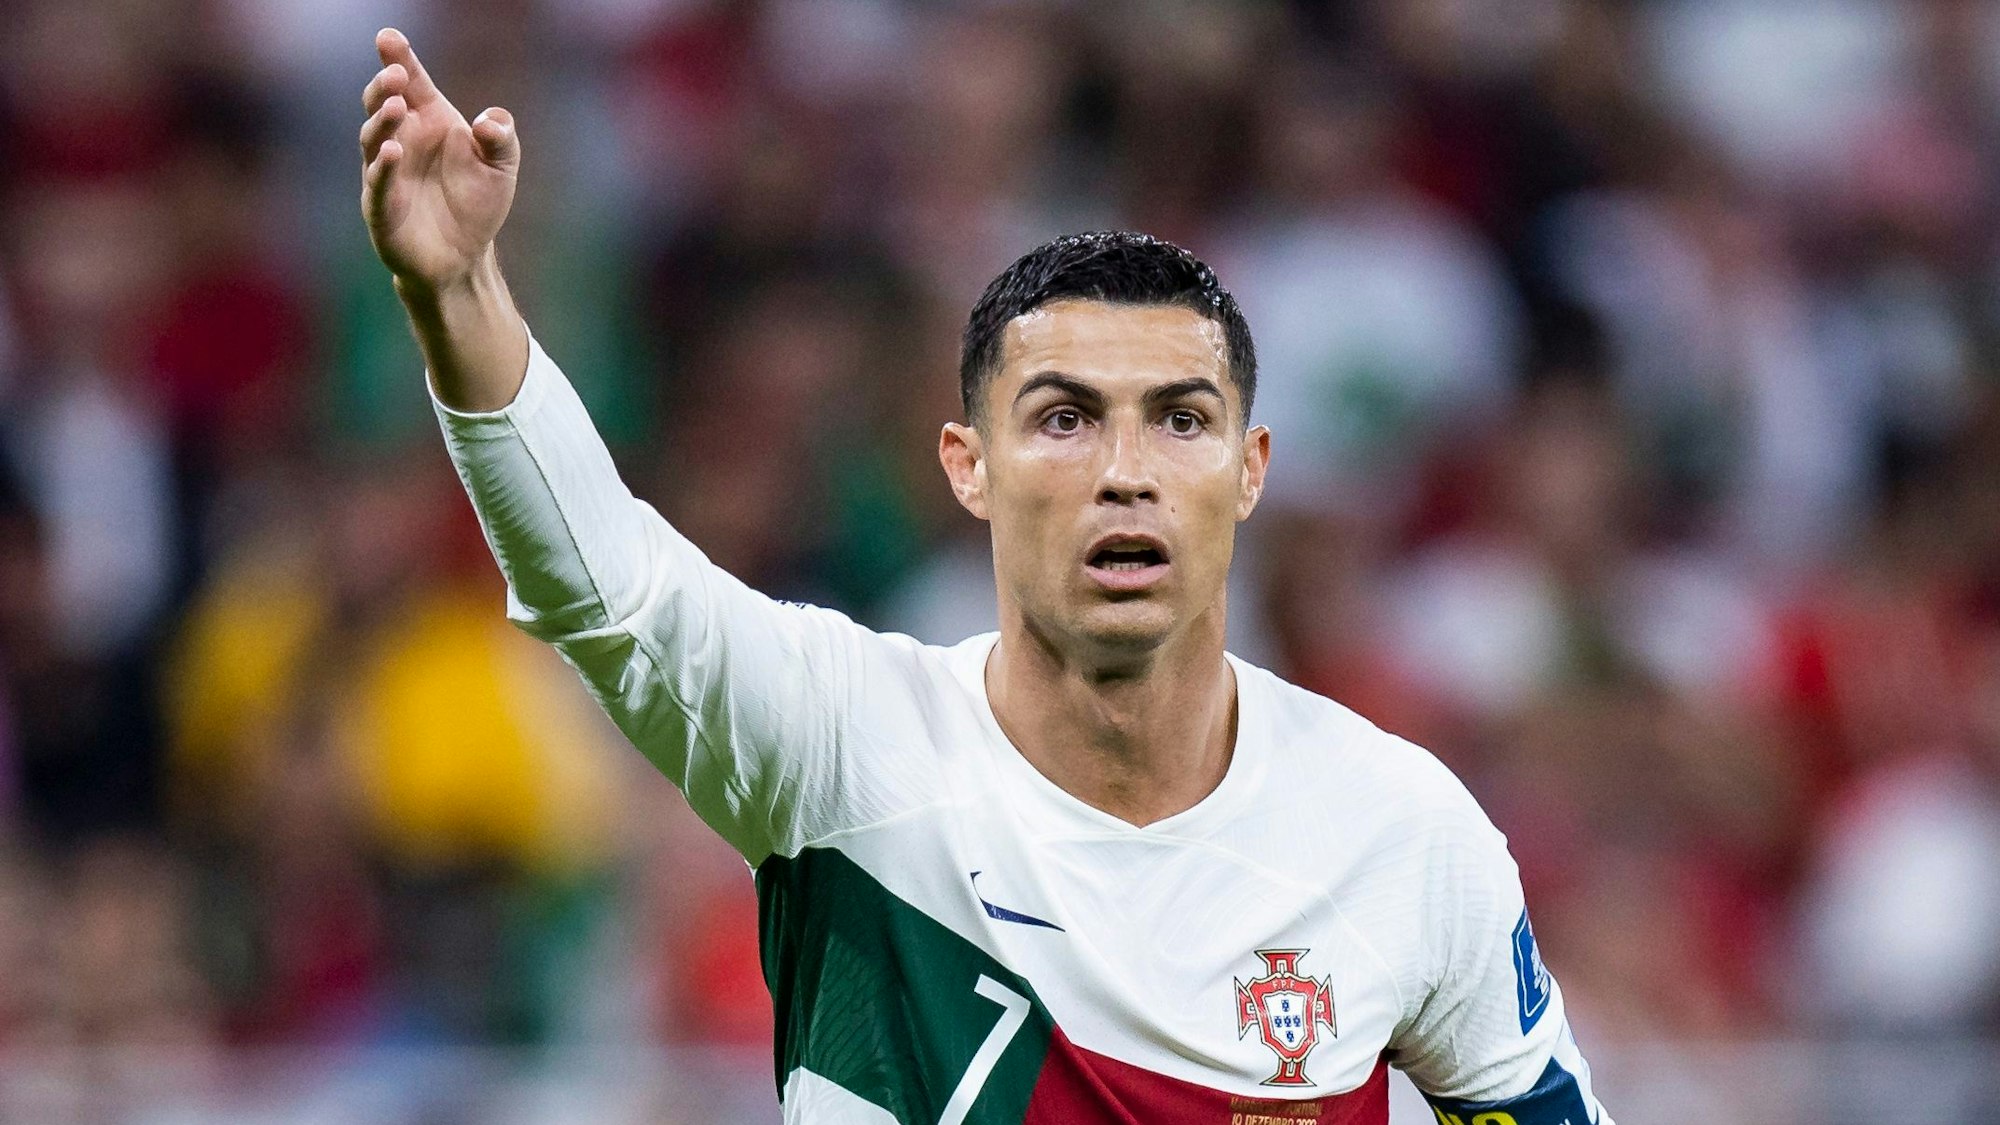 Fußball-Superstar Cristiano Ronaldo im Trikot von Portugal gestikultiert mit dem rechten Arm.